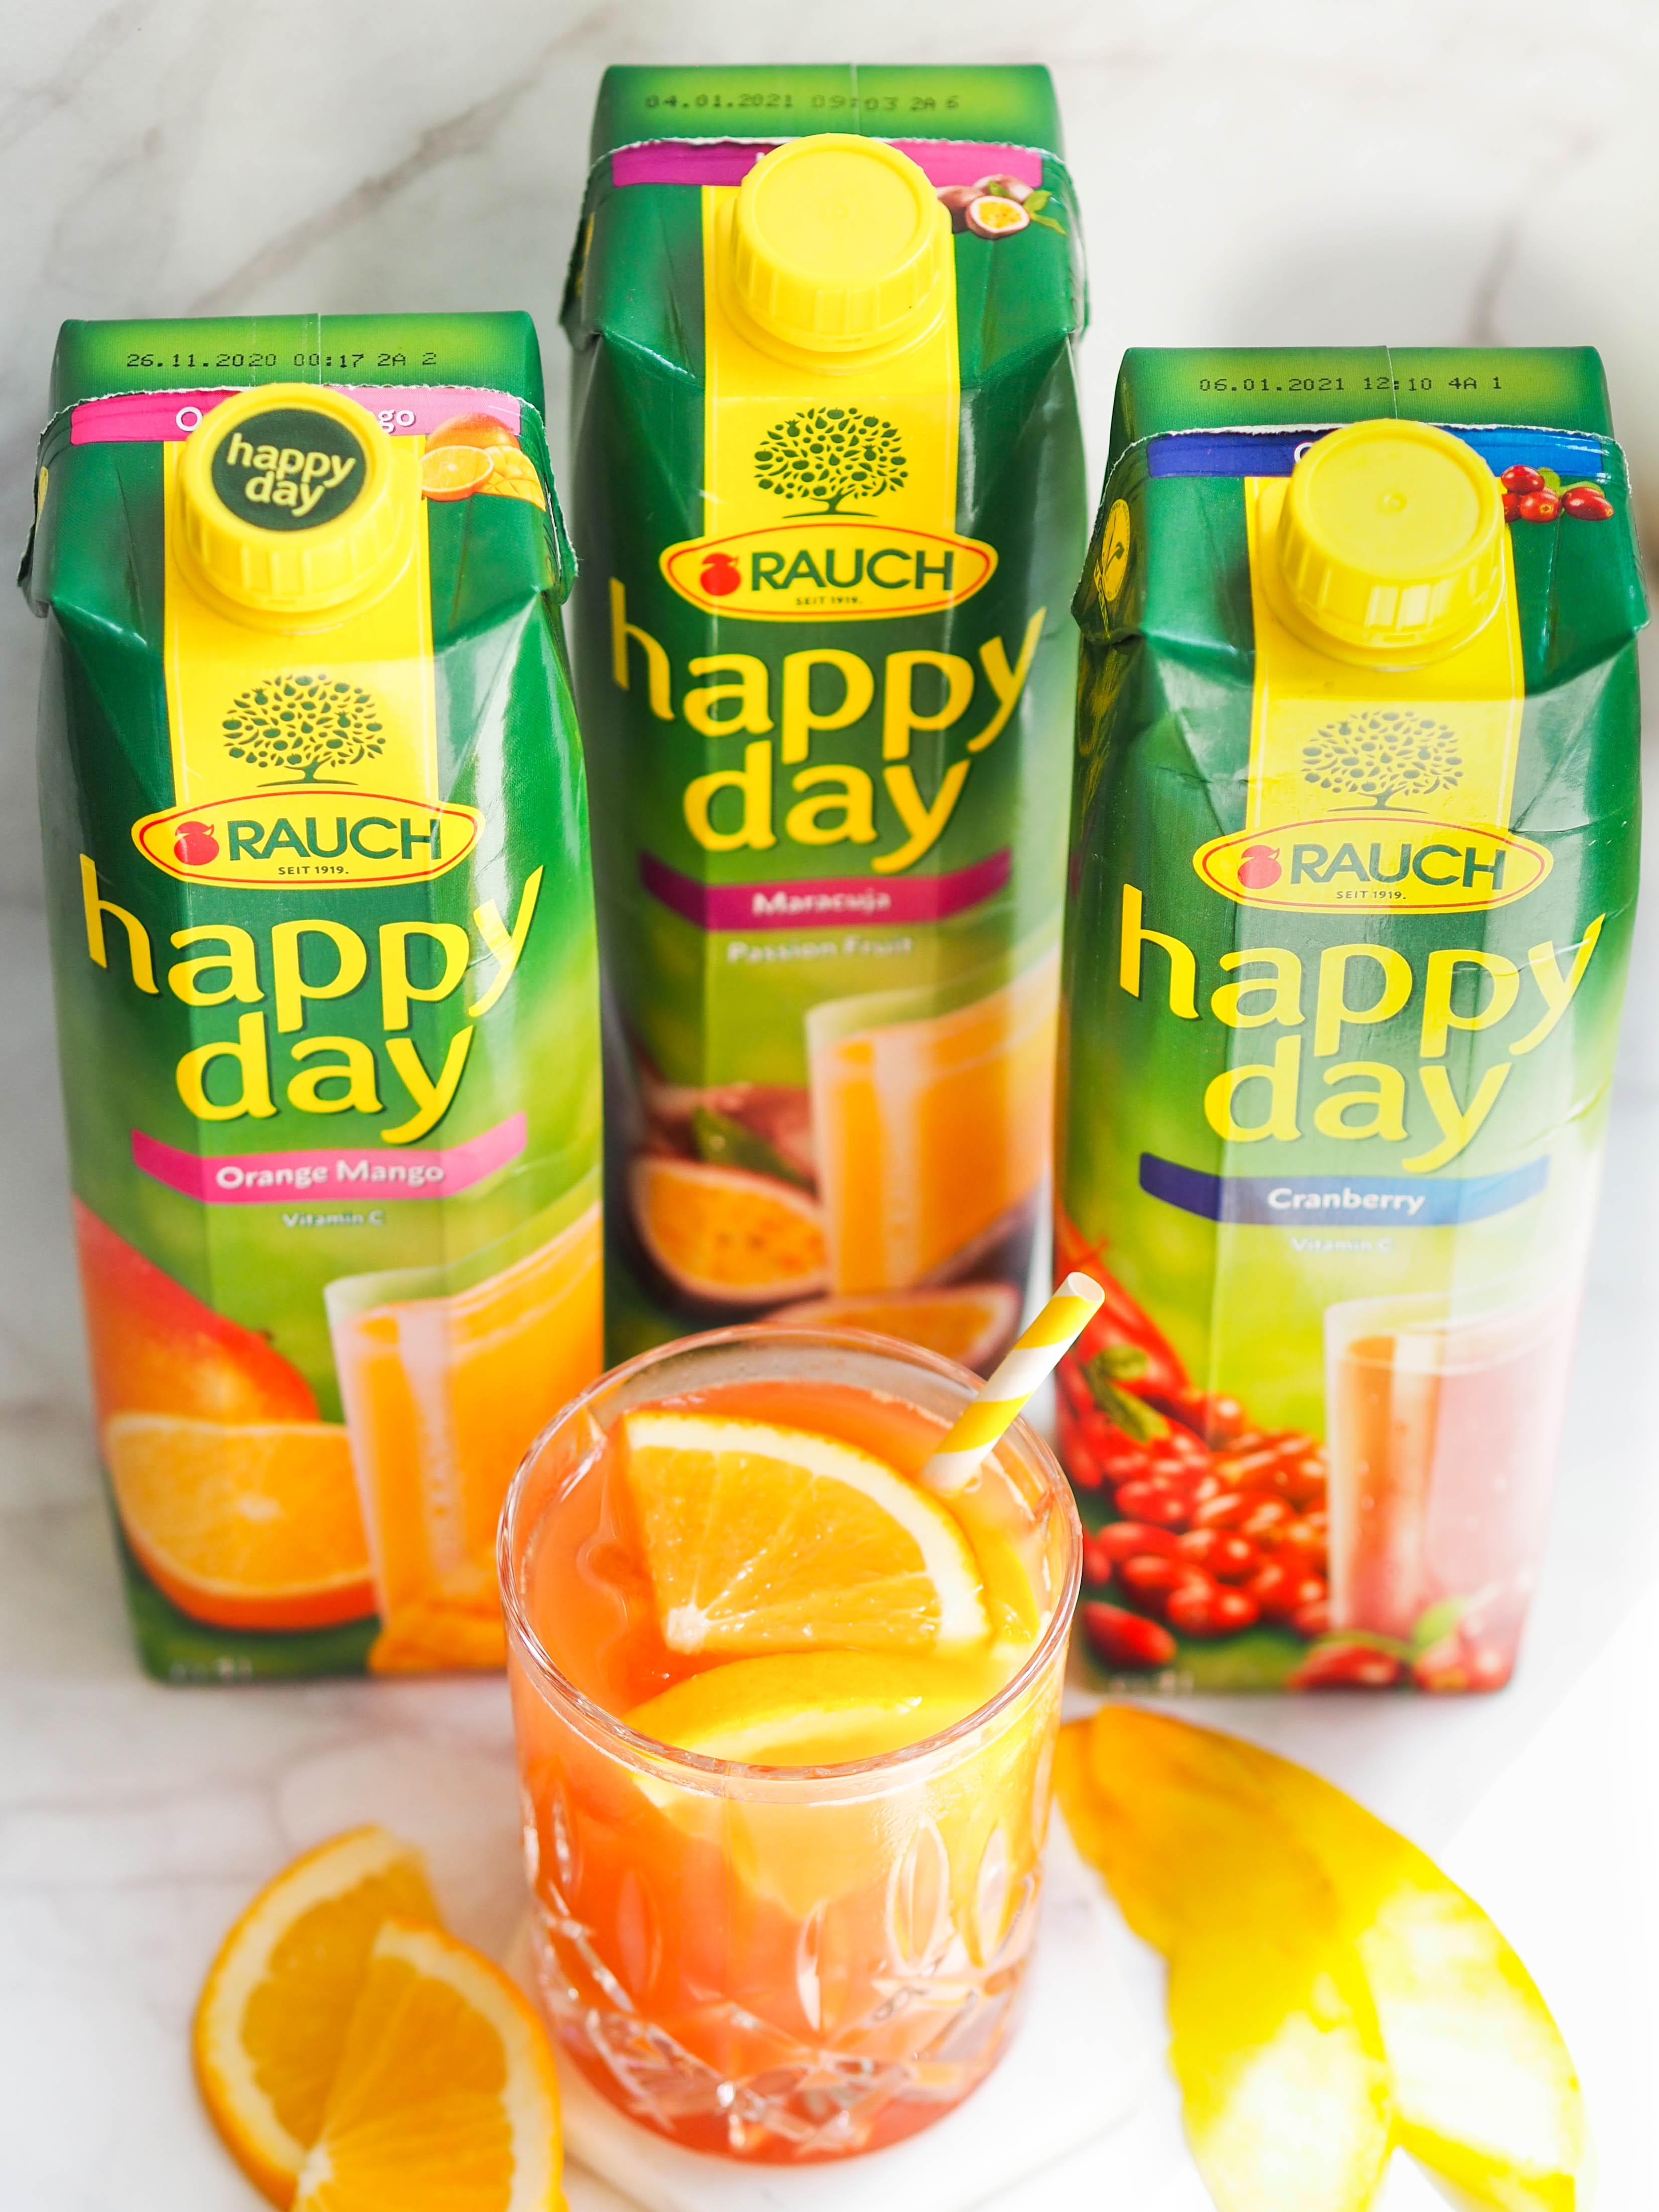 Beim “Tropical Summer” machen uns Orange-Mango, Cranberry und Maracuja von Rauch Happy Day glücklich! #lieblingsdrinks